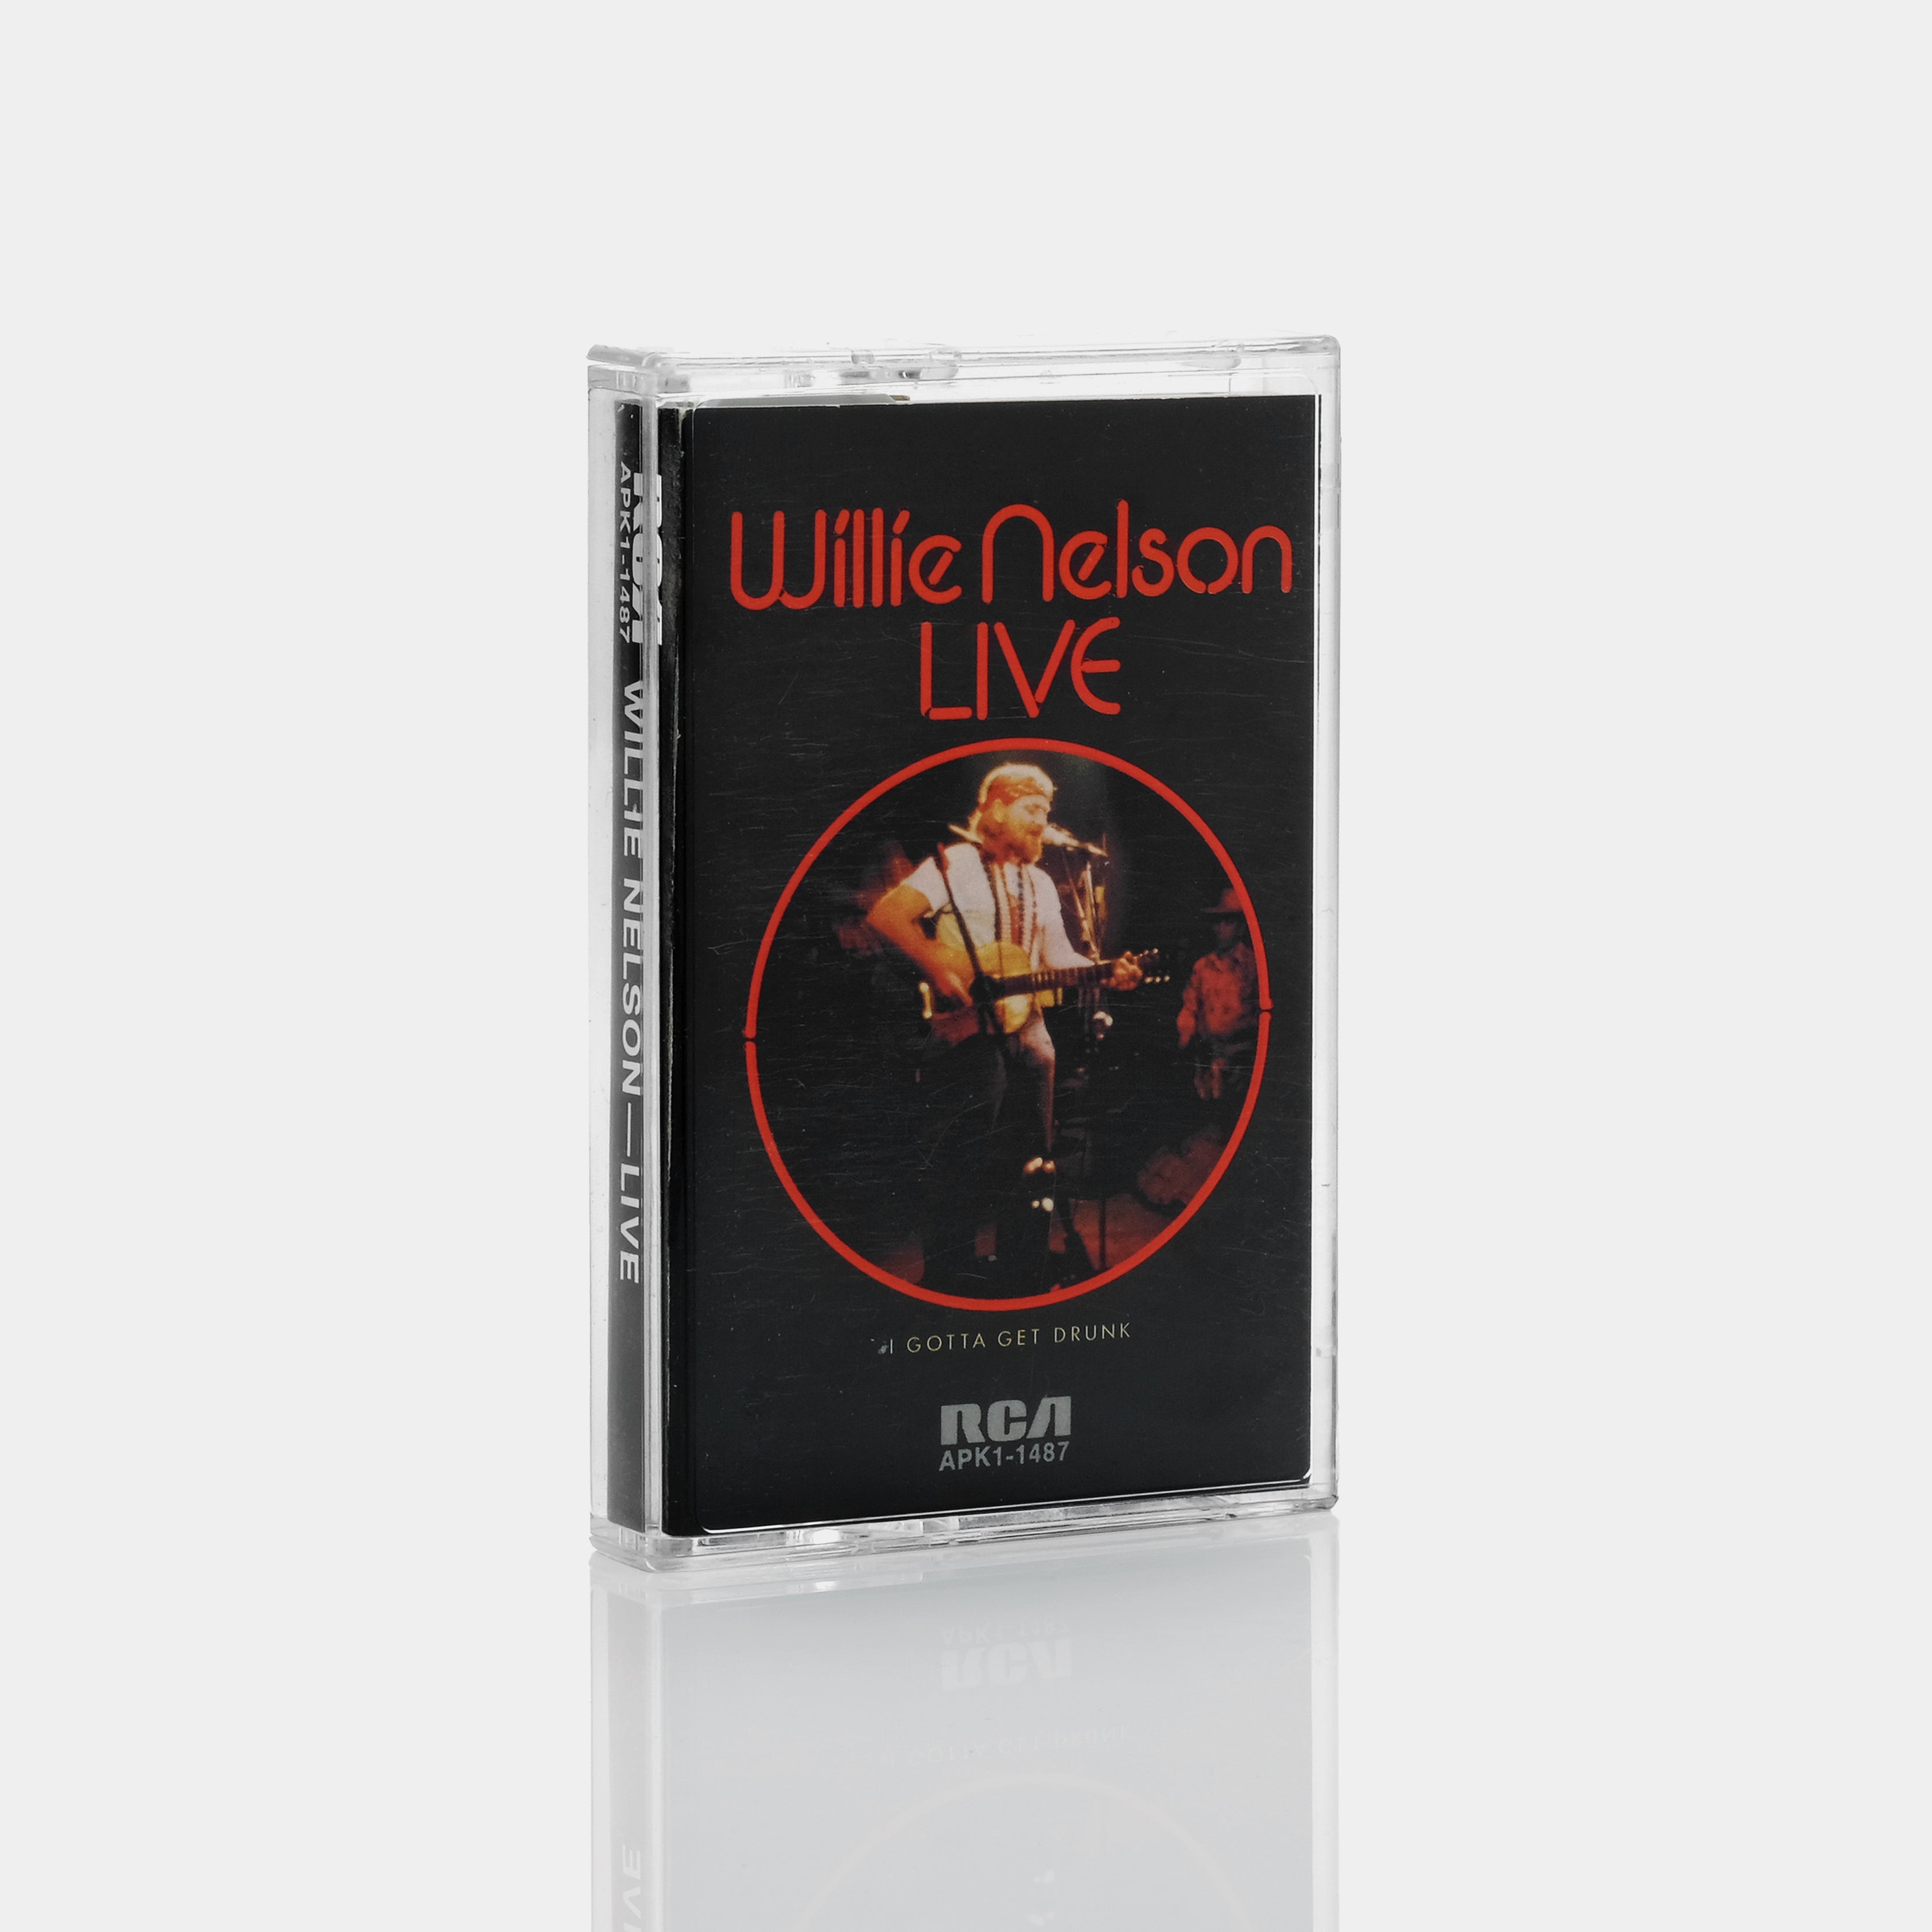 Willie Nelson - Willie Nelson Live Cassette Tape